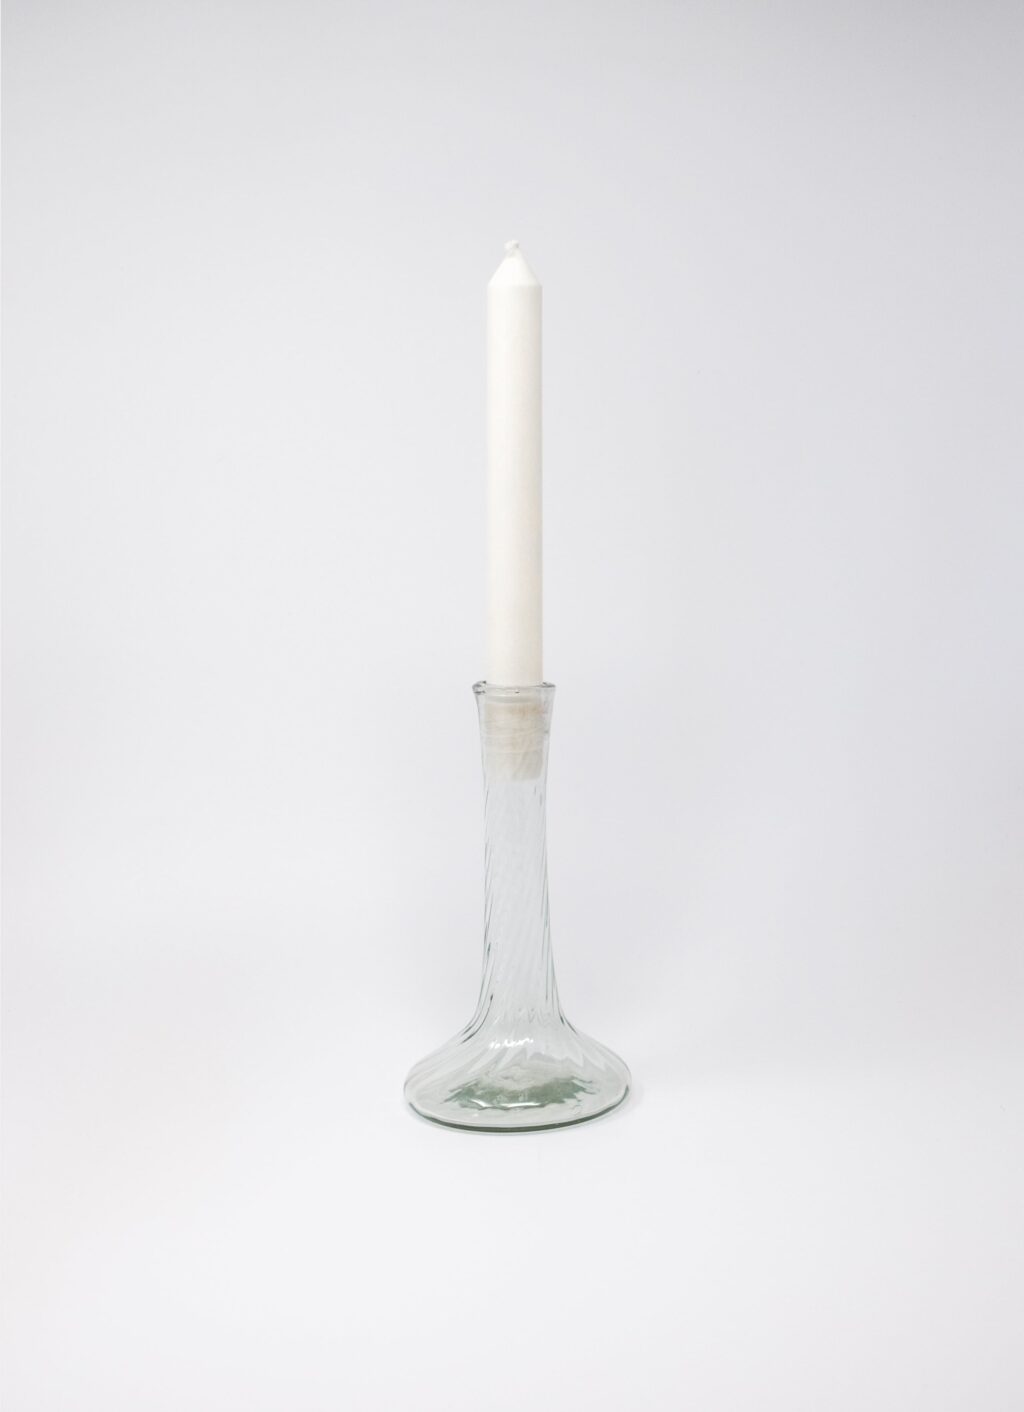 La Soufflerie - Bougeoir Venise - Glass Candle Holder - Transparent